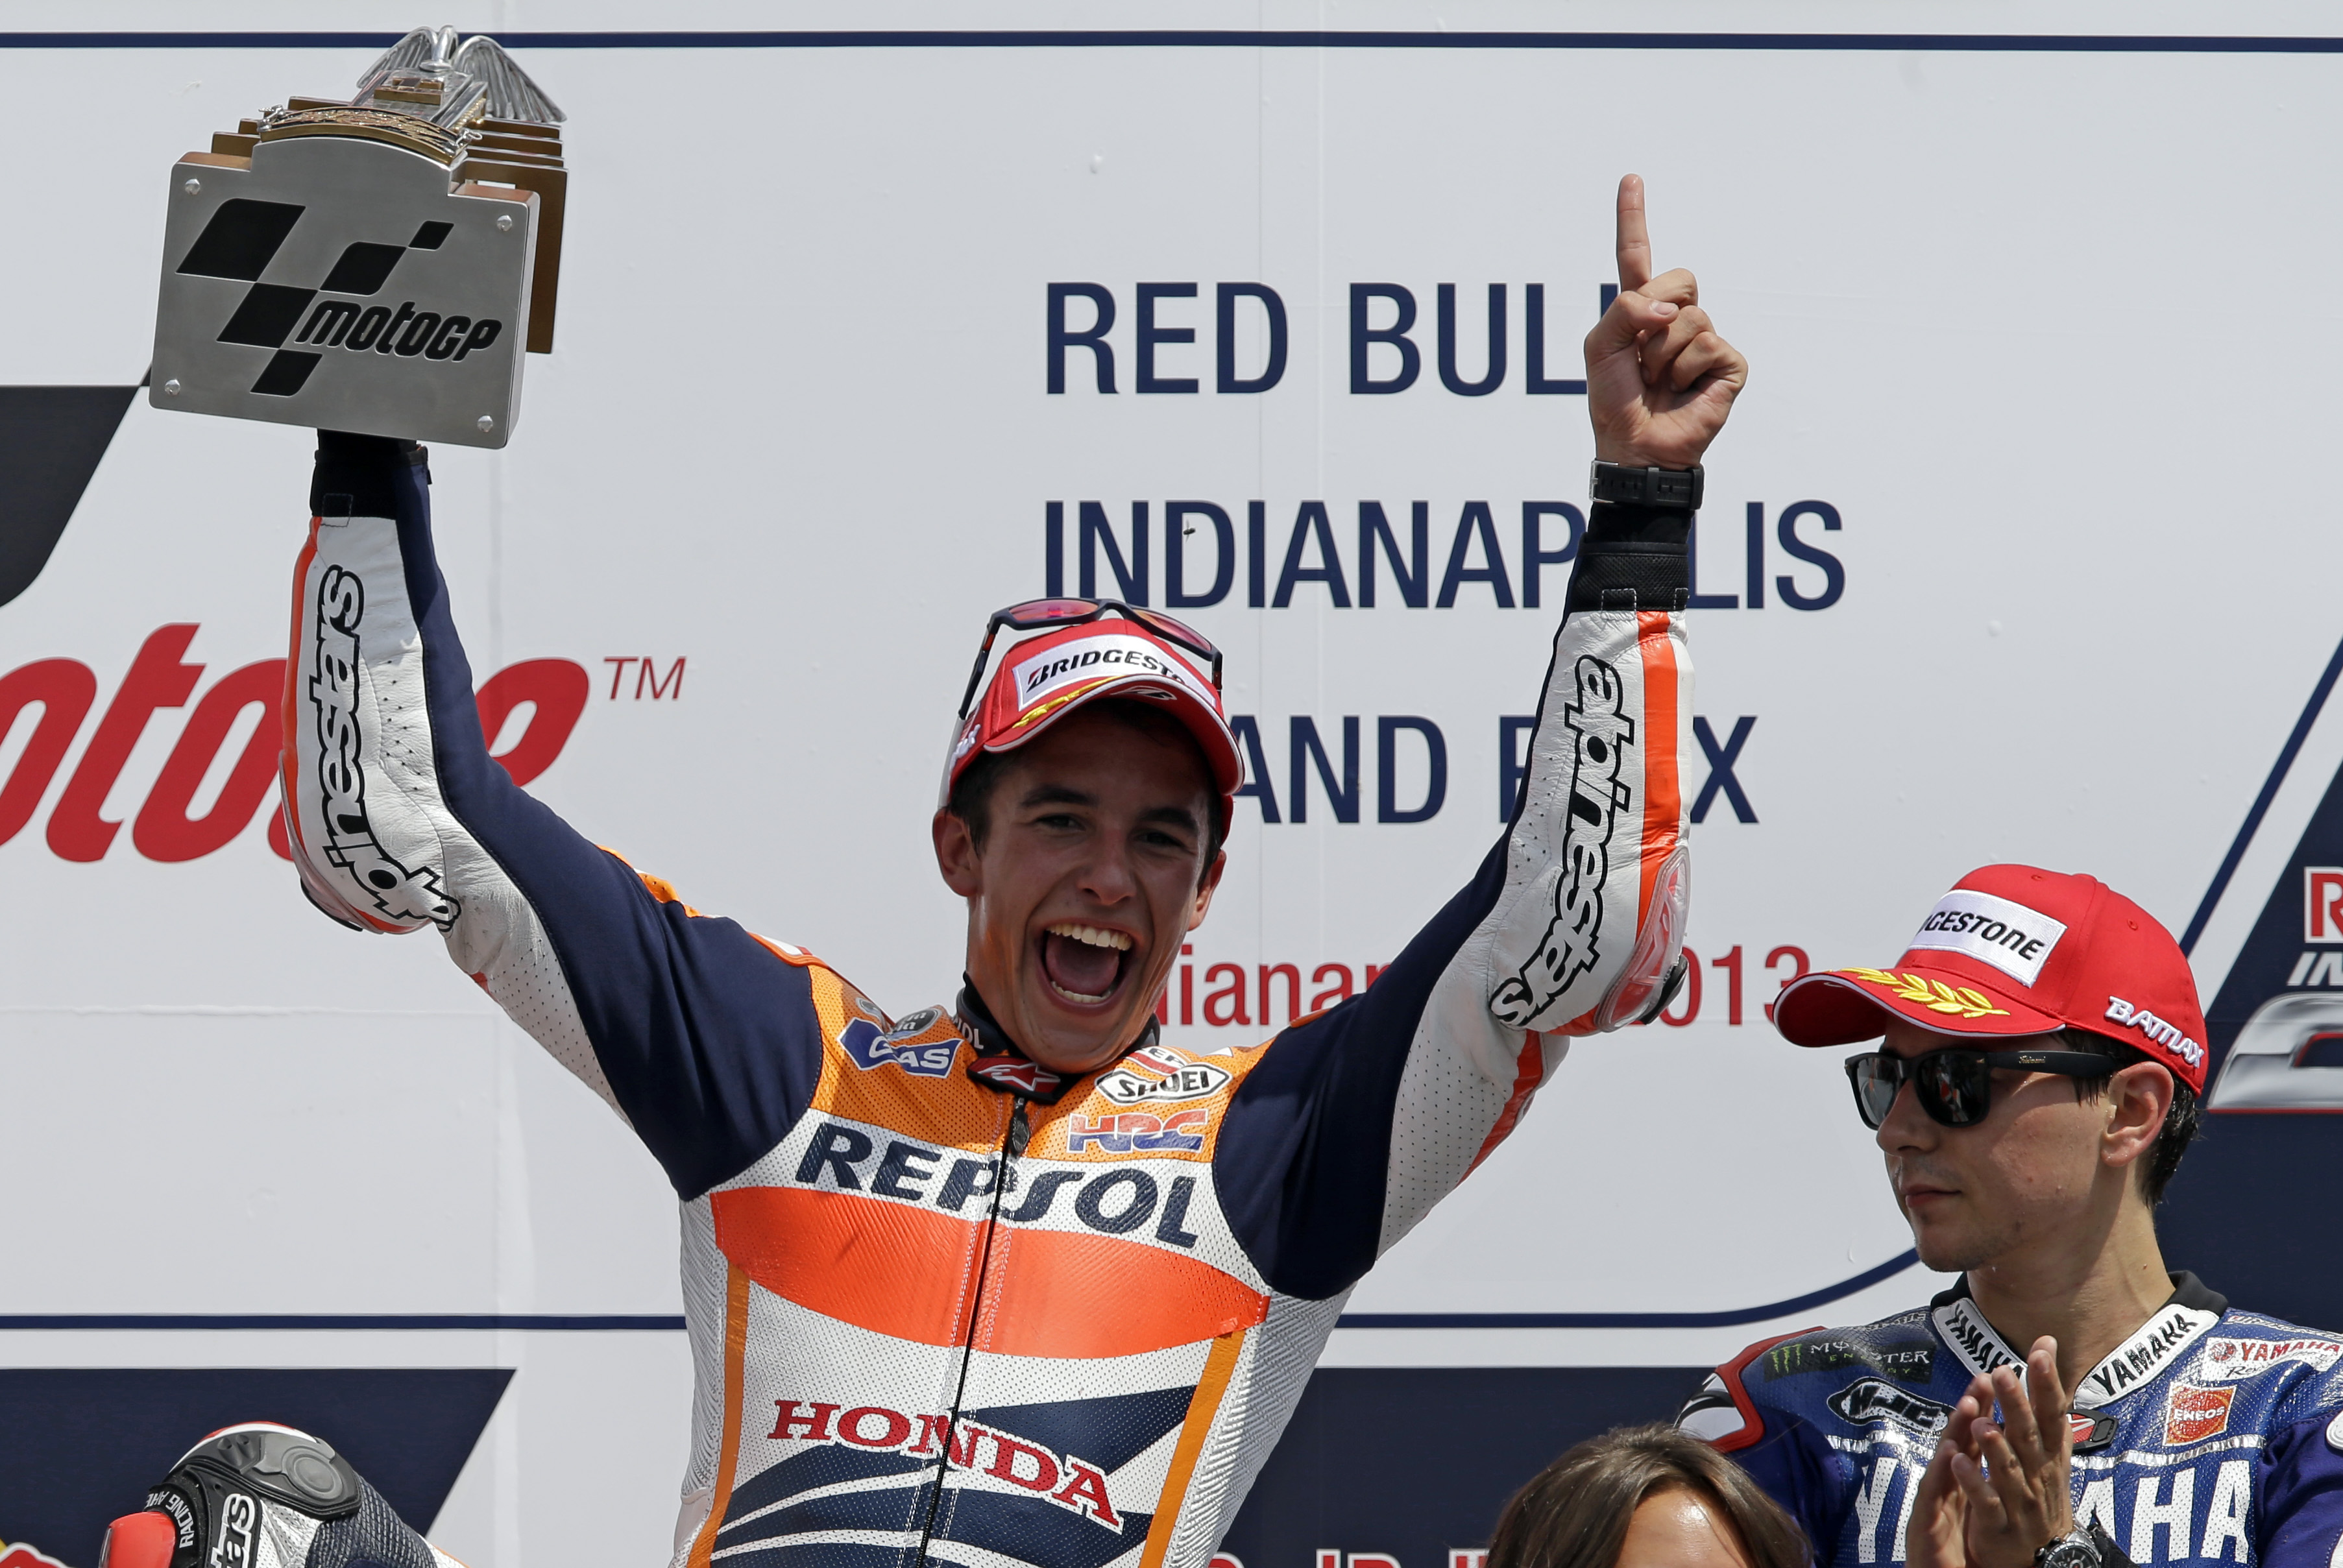 MotoGP - Indianapolis 2013: Νίκη σε ρυθμό βόλτας για τον M. Marquez